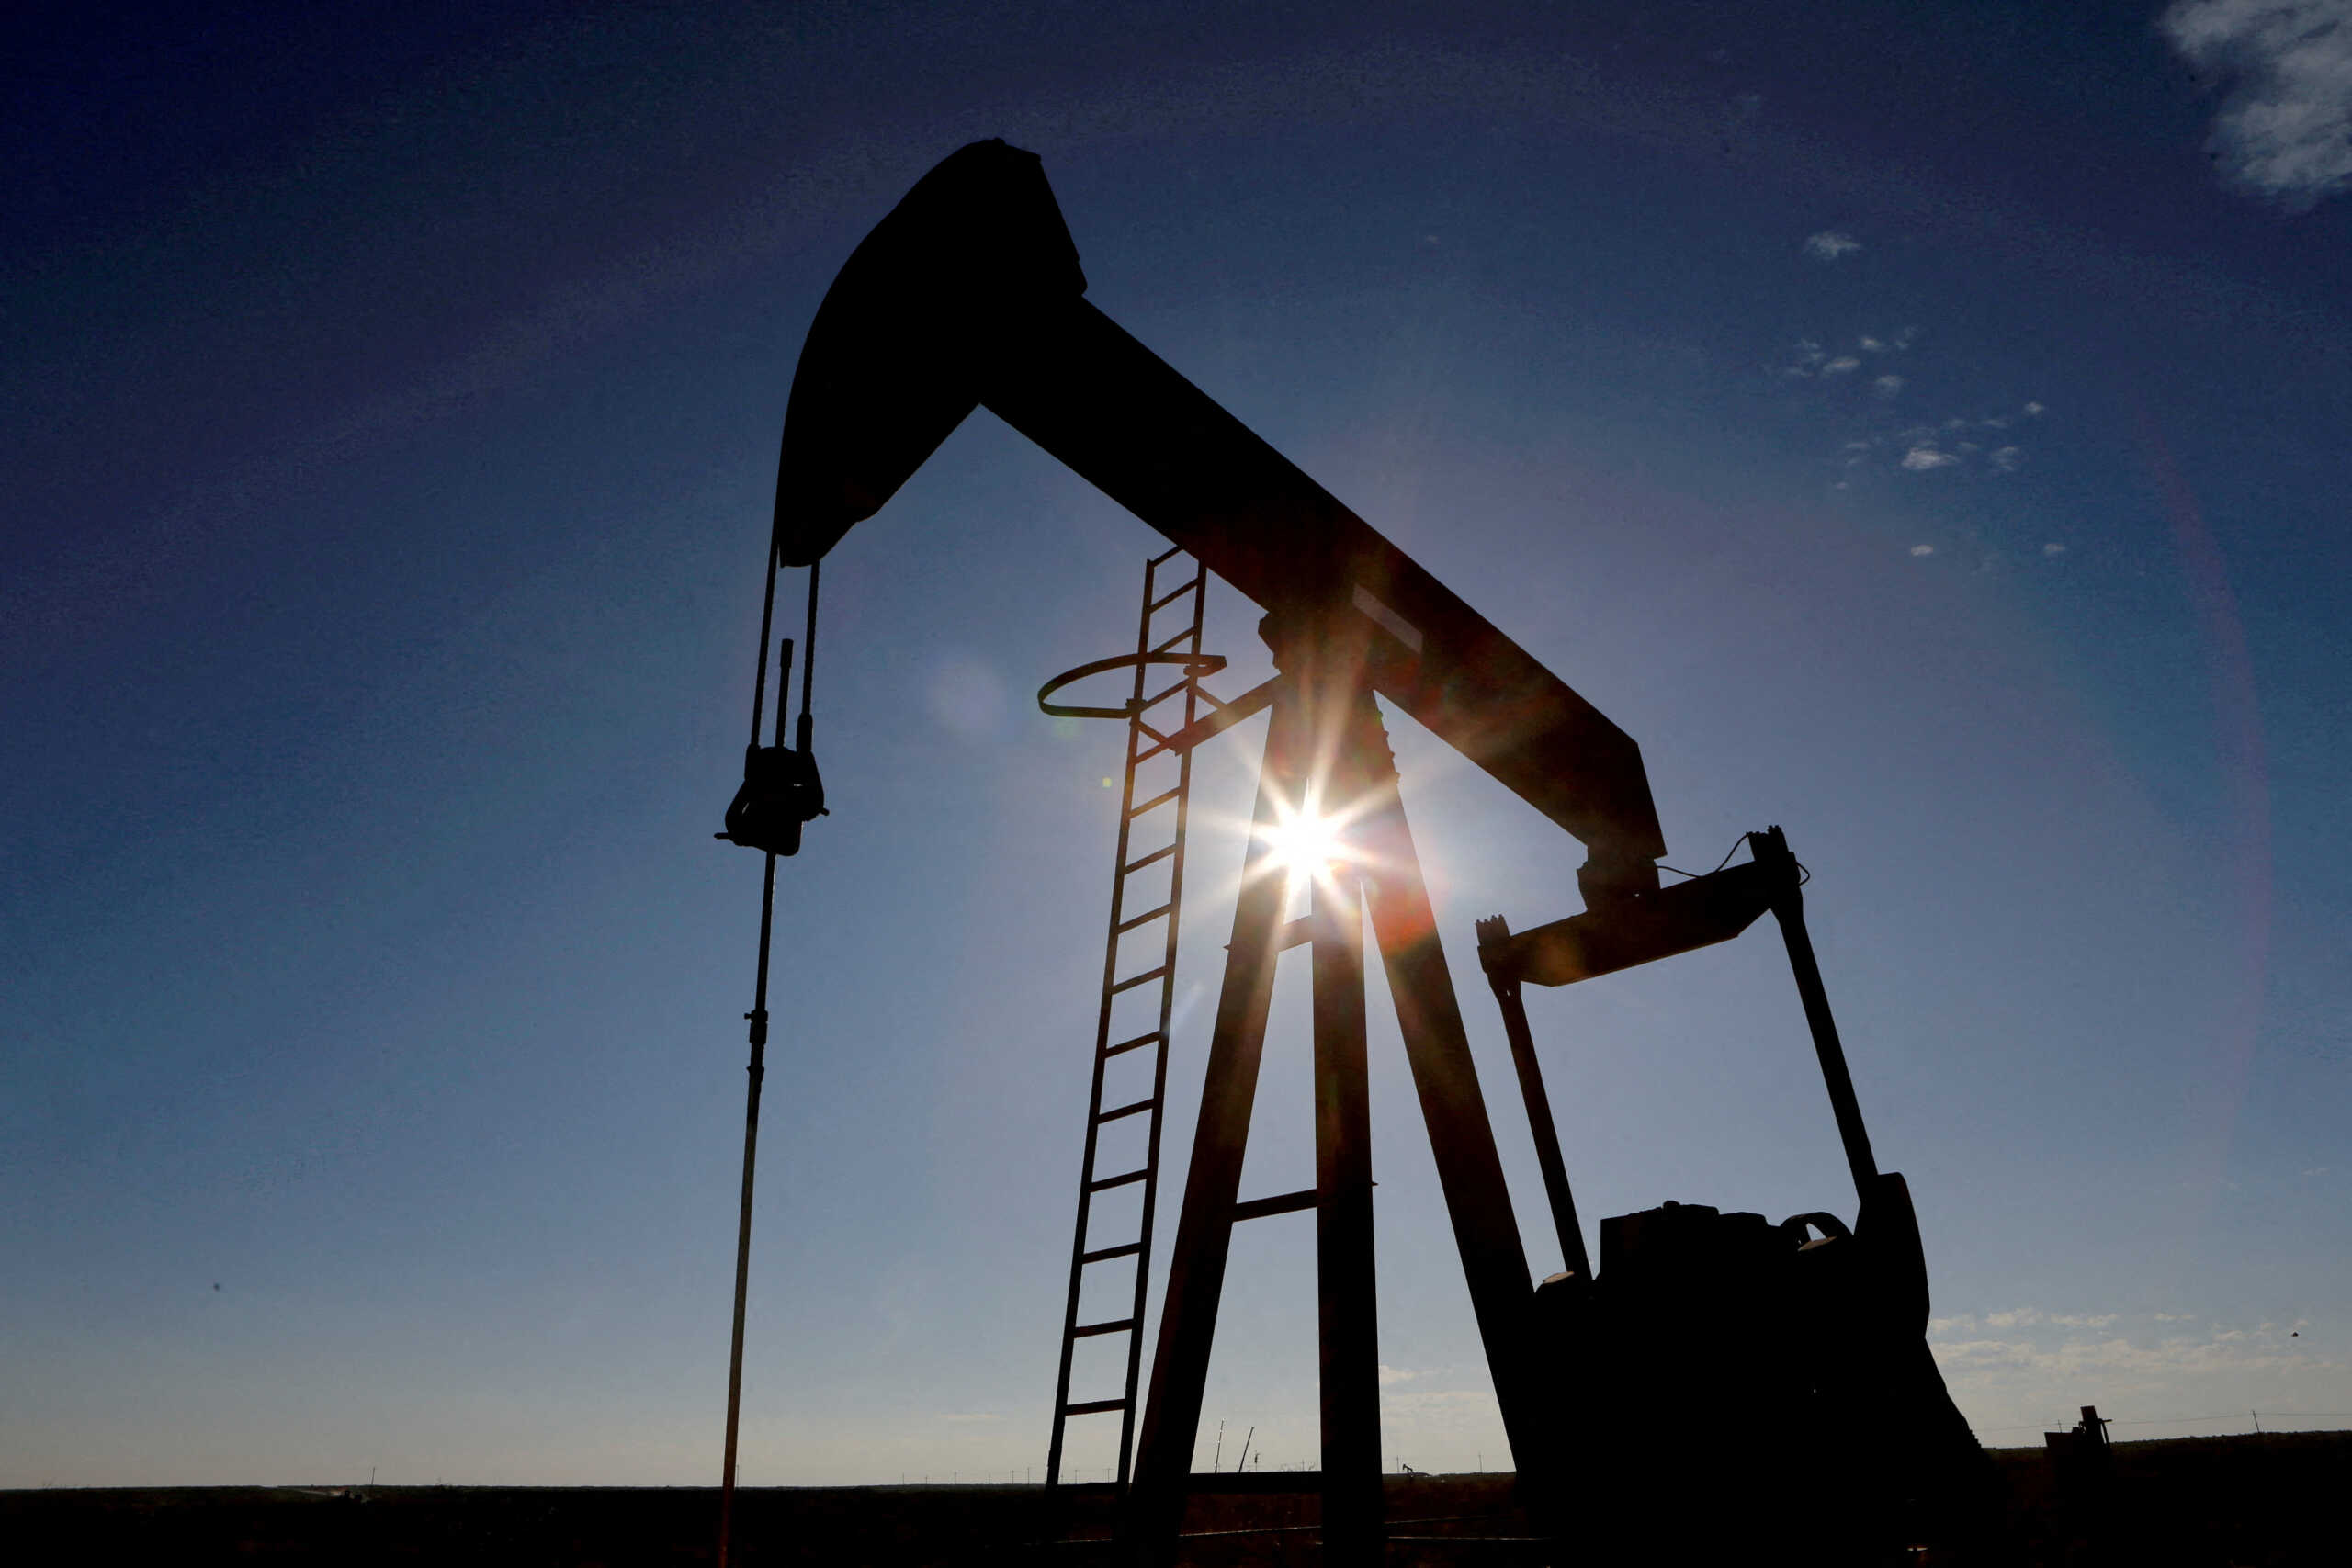 Πετρέλαιο: Προς εκτόξευση το Brent, σκαρφαλώνουν ξανά οι τιμές των καυσίμων